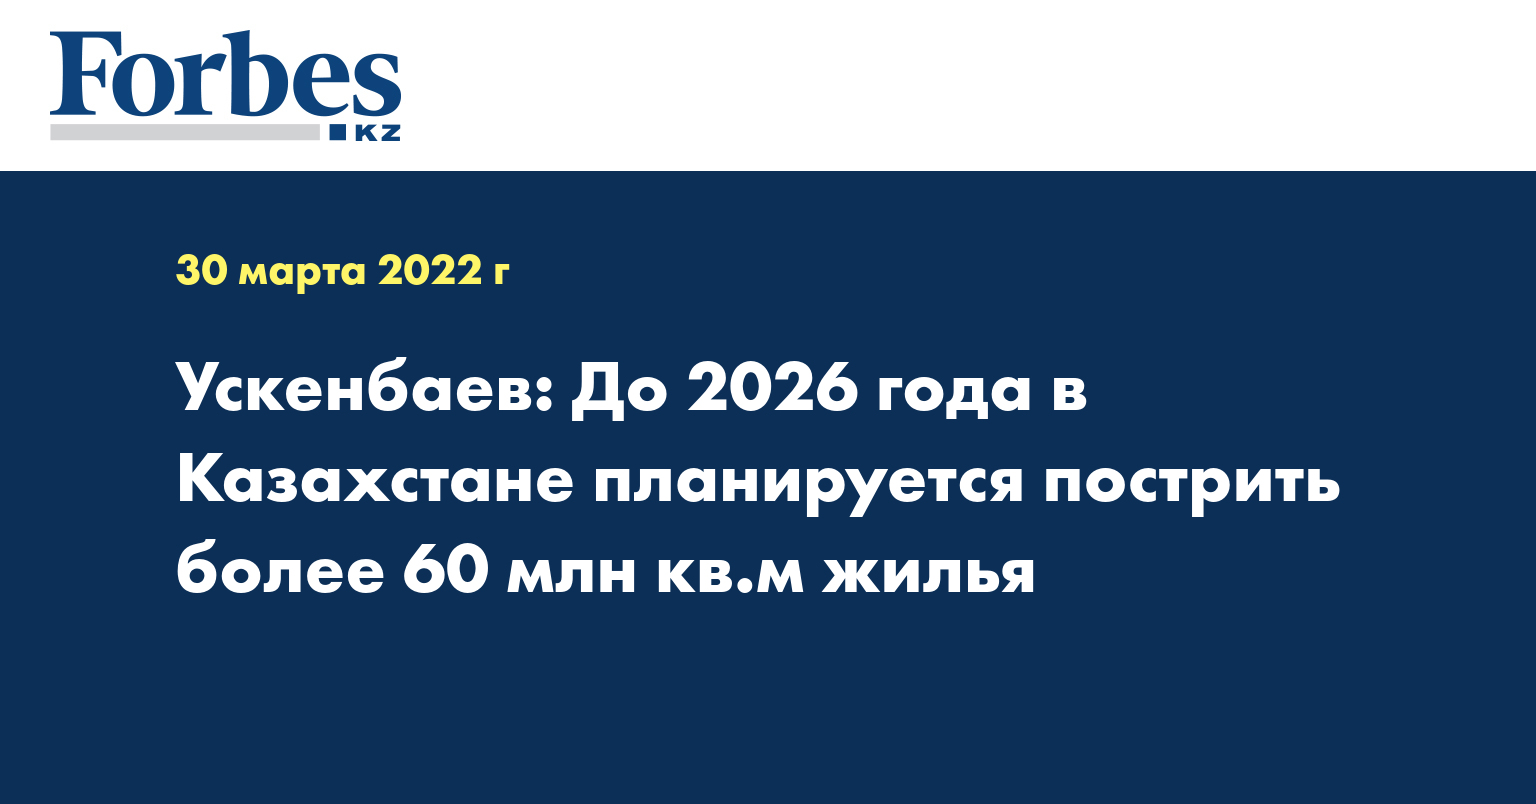 Ускенбаев: До 2026 года в Казахстане планируется пострить более 60 млн кв.м жилья